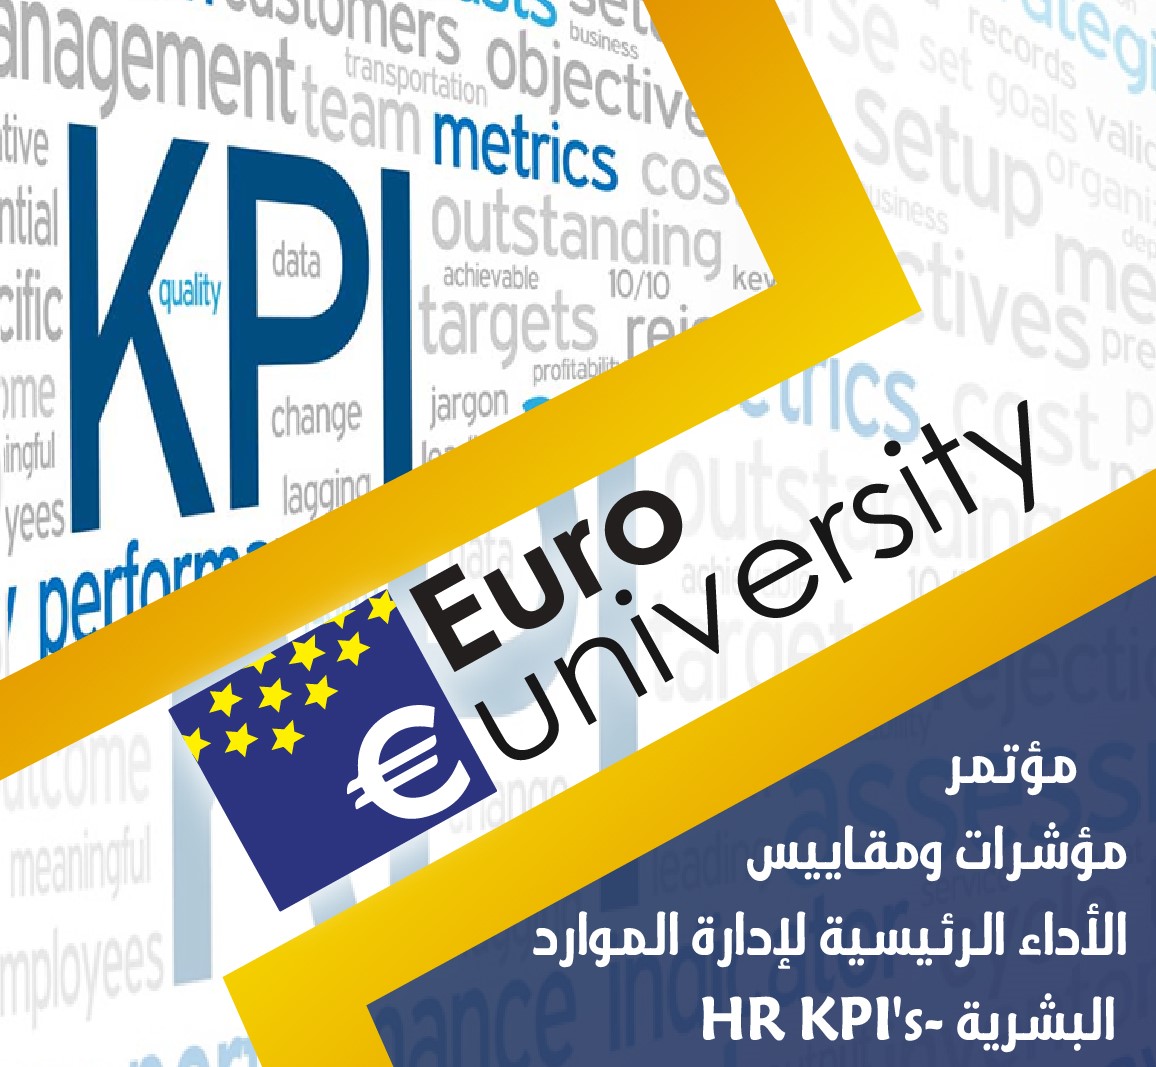  مؤتمر: مؤشرات ومقاييس الأداء الرئيسية لإدارة الموارد البشرية -HR KPI 